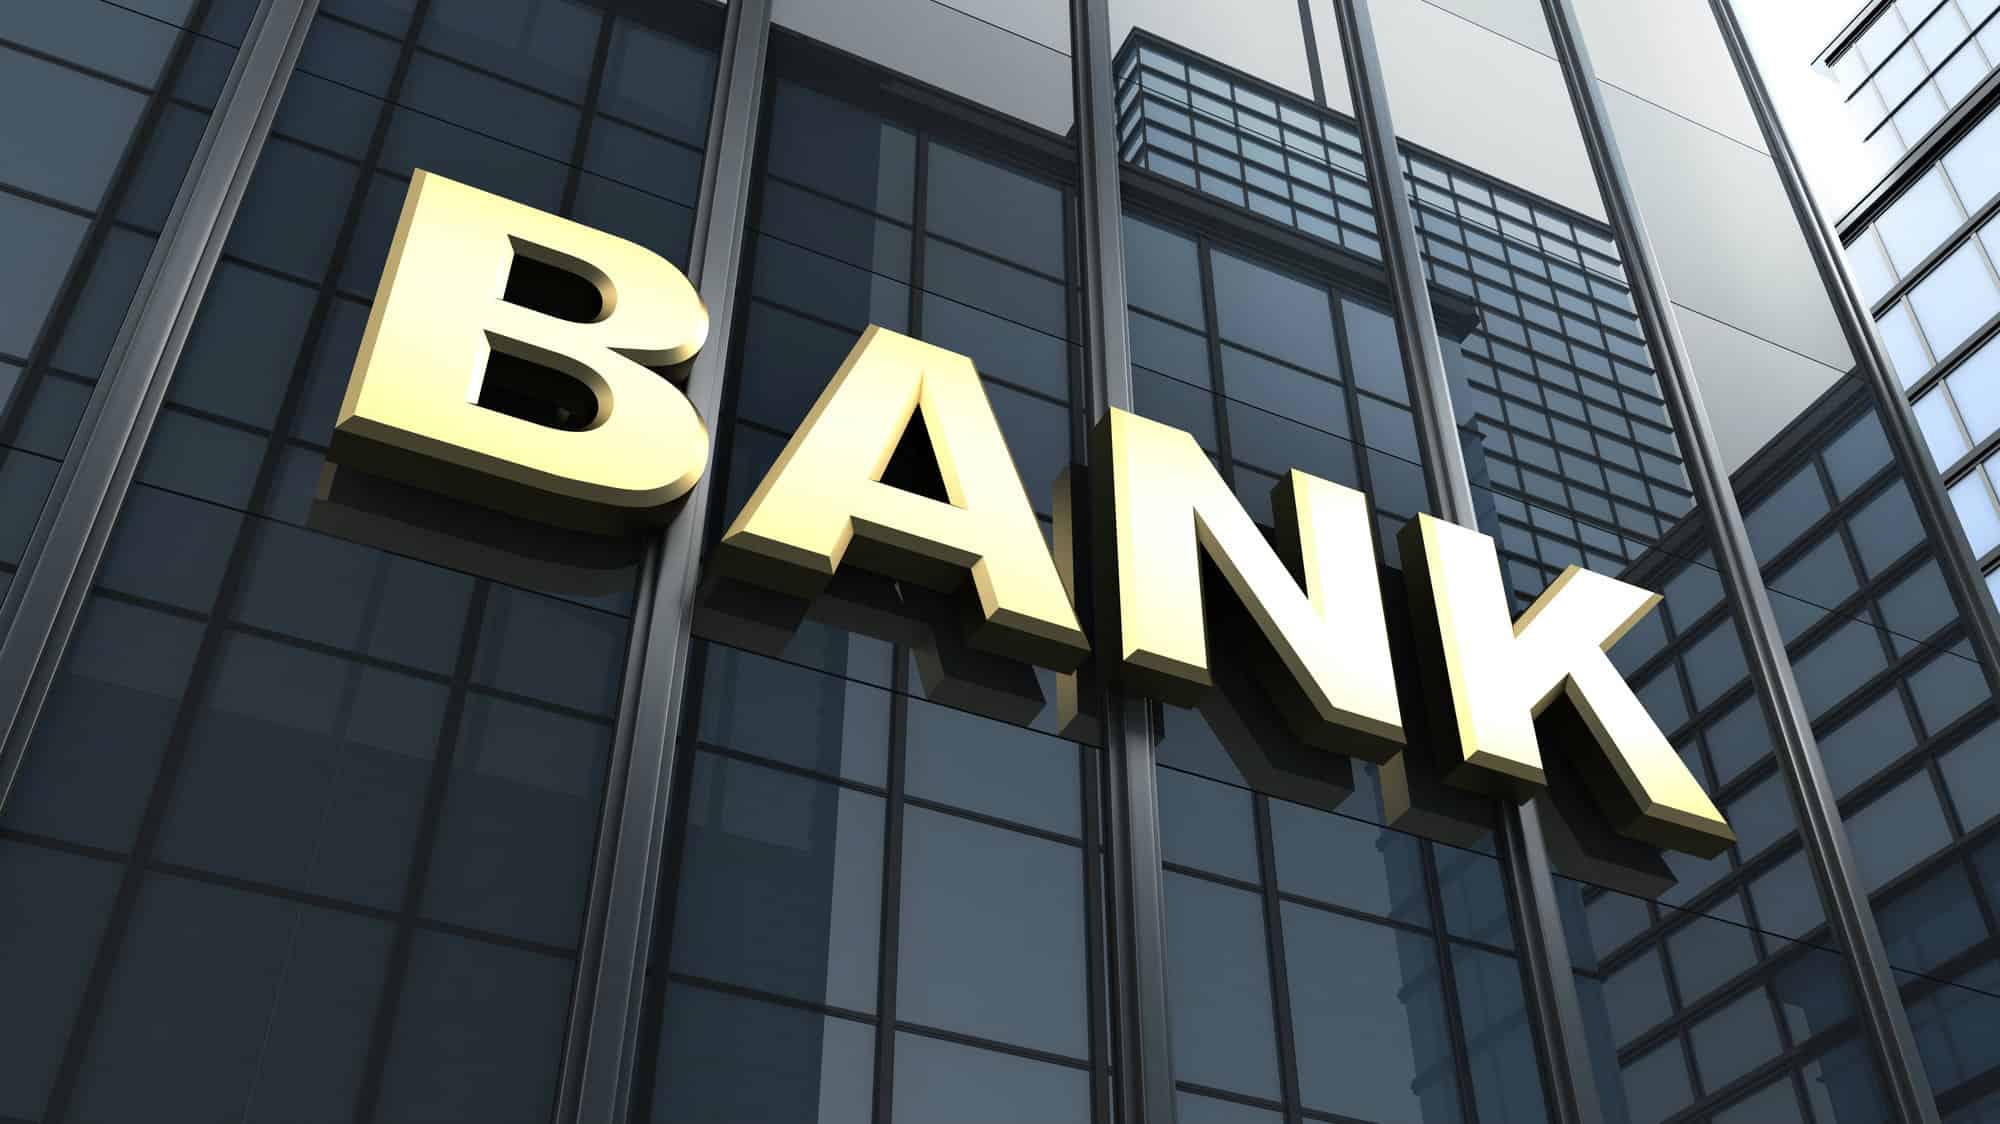 تحويل الراتب من بنك لبنك مع وجود قرض - موسوعة اقتصادنا